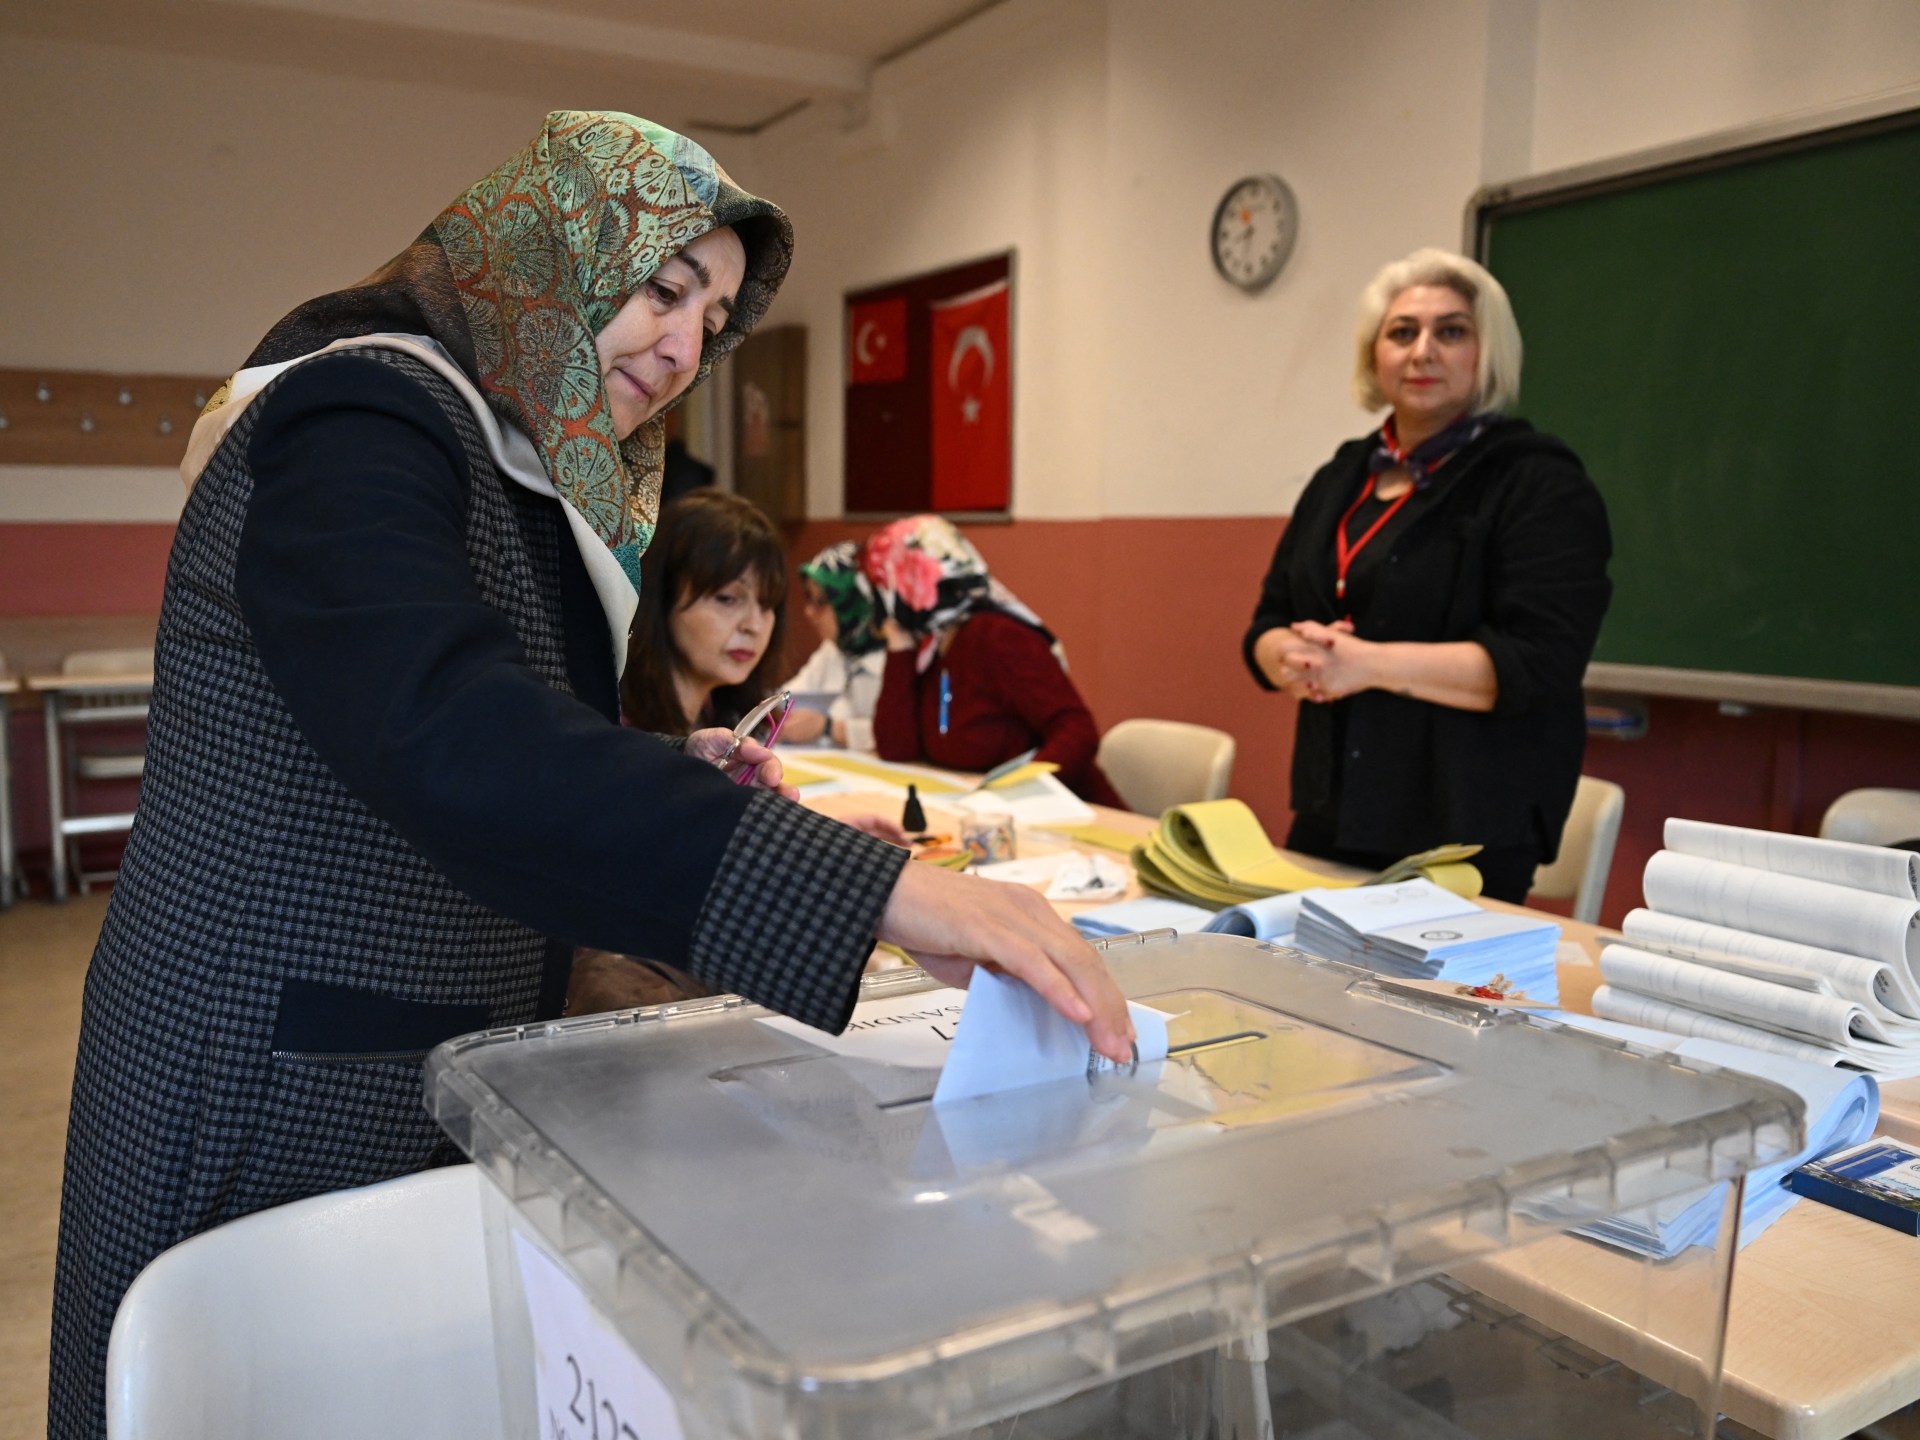 Iniziano le votazioni per le elezioni locali turche, per testare la popolarità di Erdogan  Notizie sulle elezioni